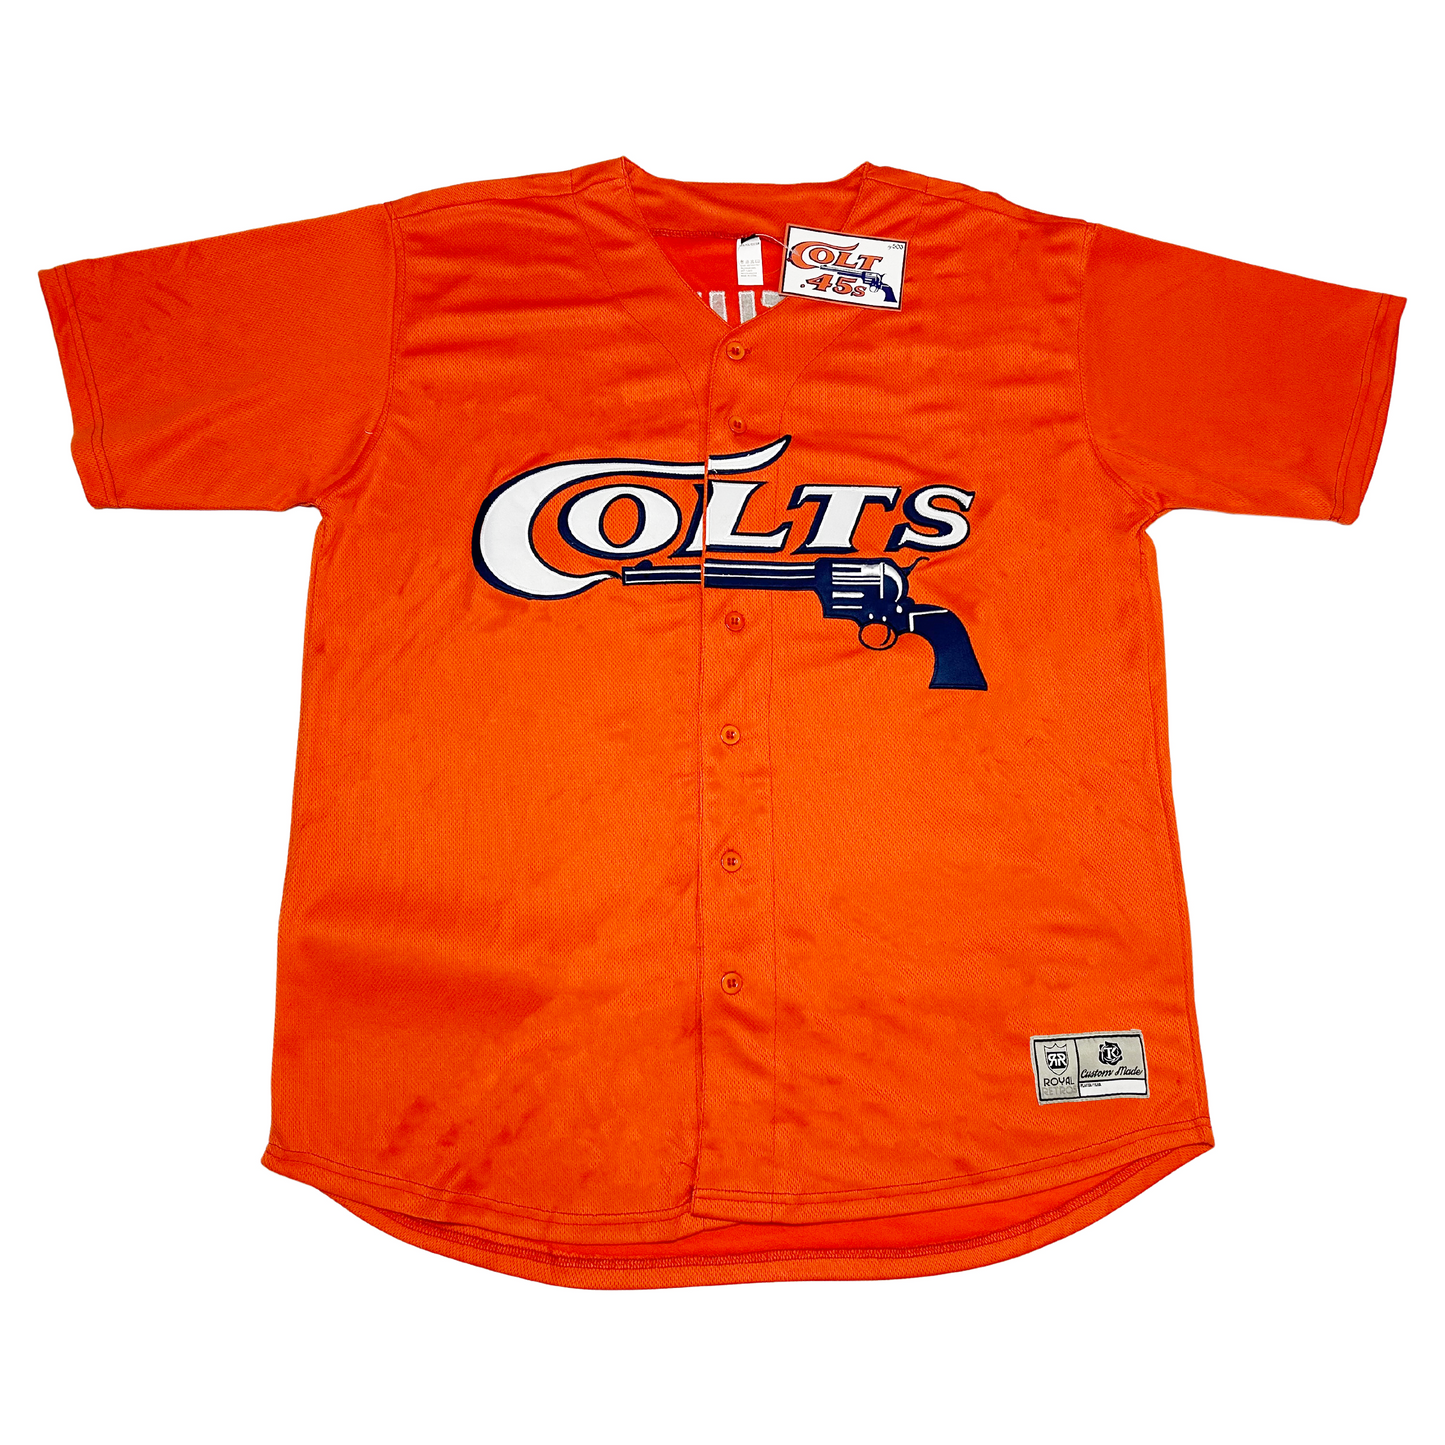 colts baseball jersey